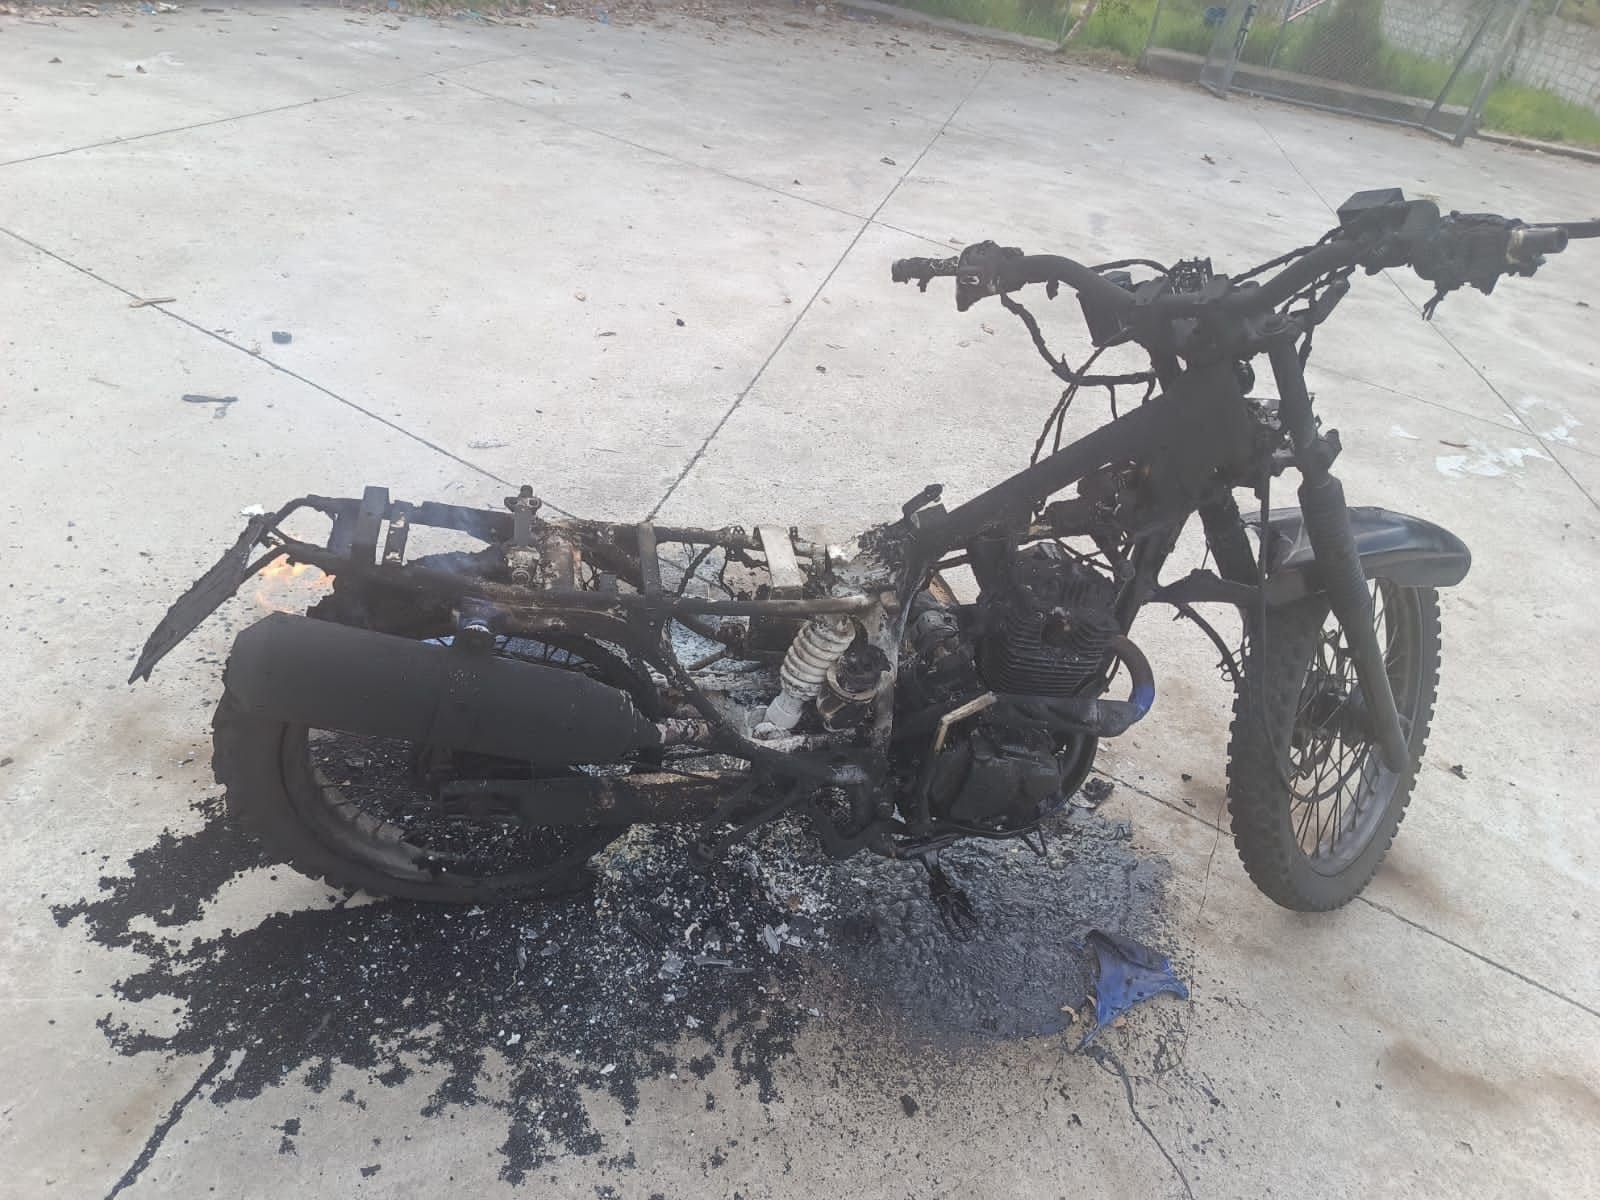 Habitantes de Tumbaco activaron alarmas e incendiaron una motocicleta de presuntos extorsionadores 